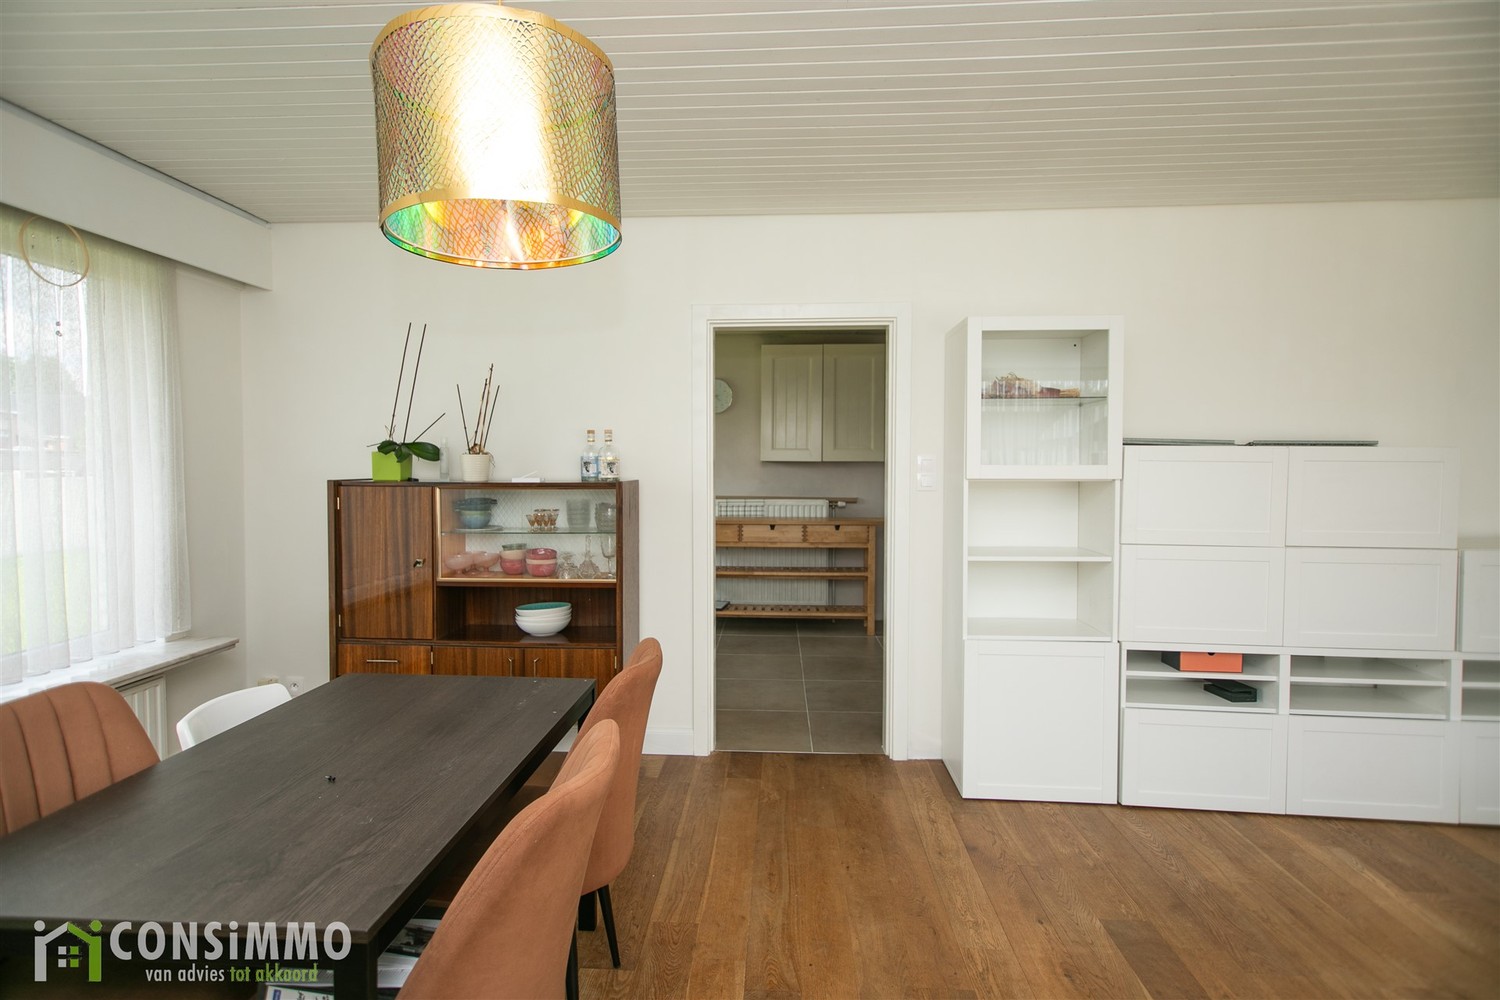 Vrijstaande, gelijkvloerse woning met 3 slaapkamers in Houthalen-Helchteren! foto 10